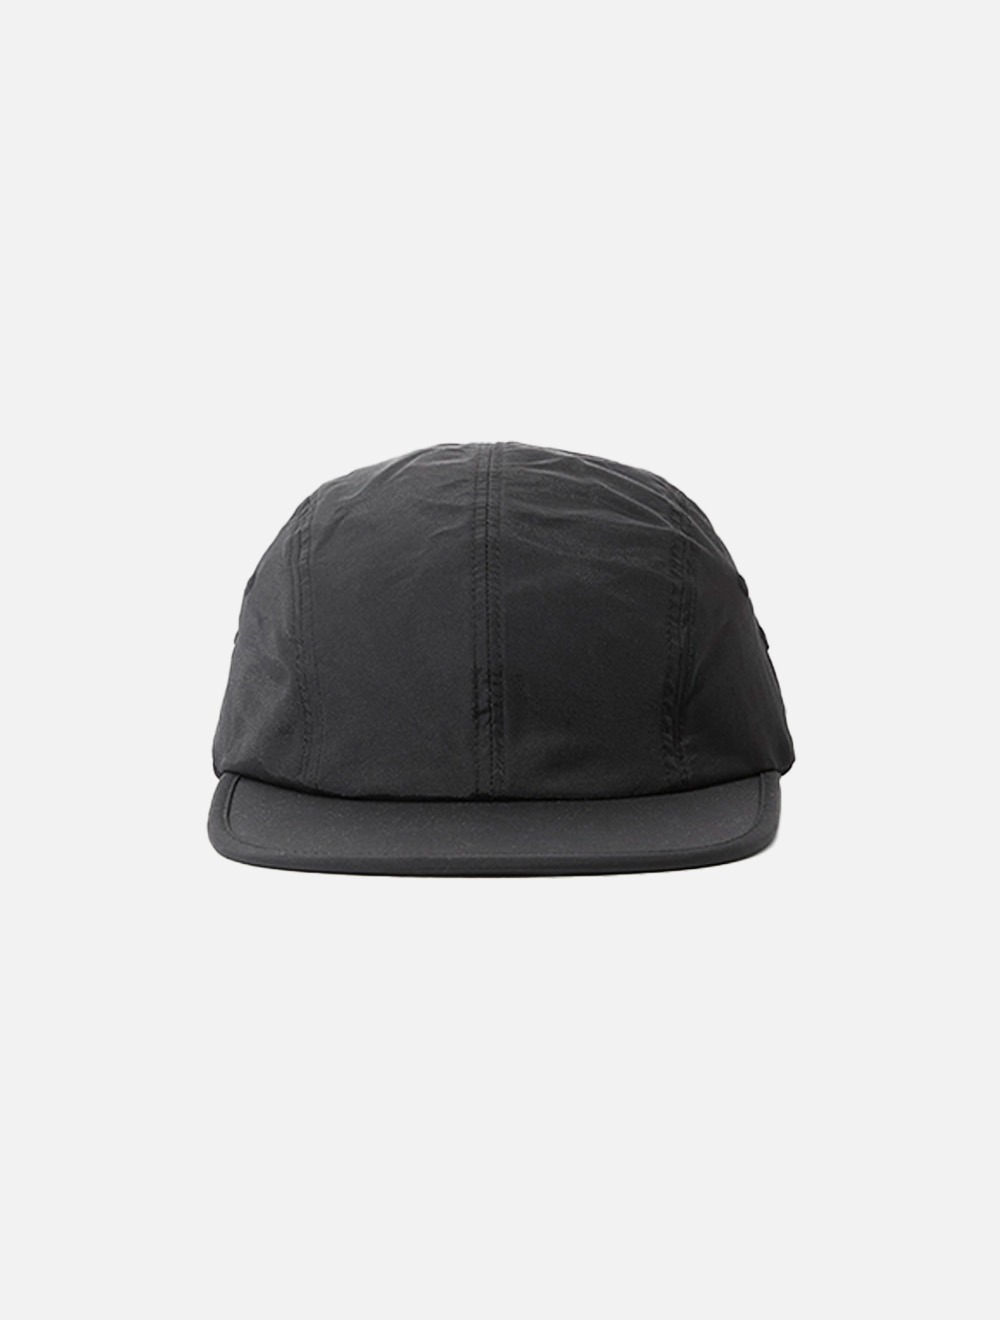 HIKER CAP (Black)